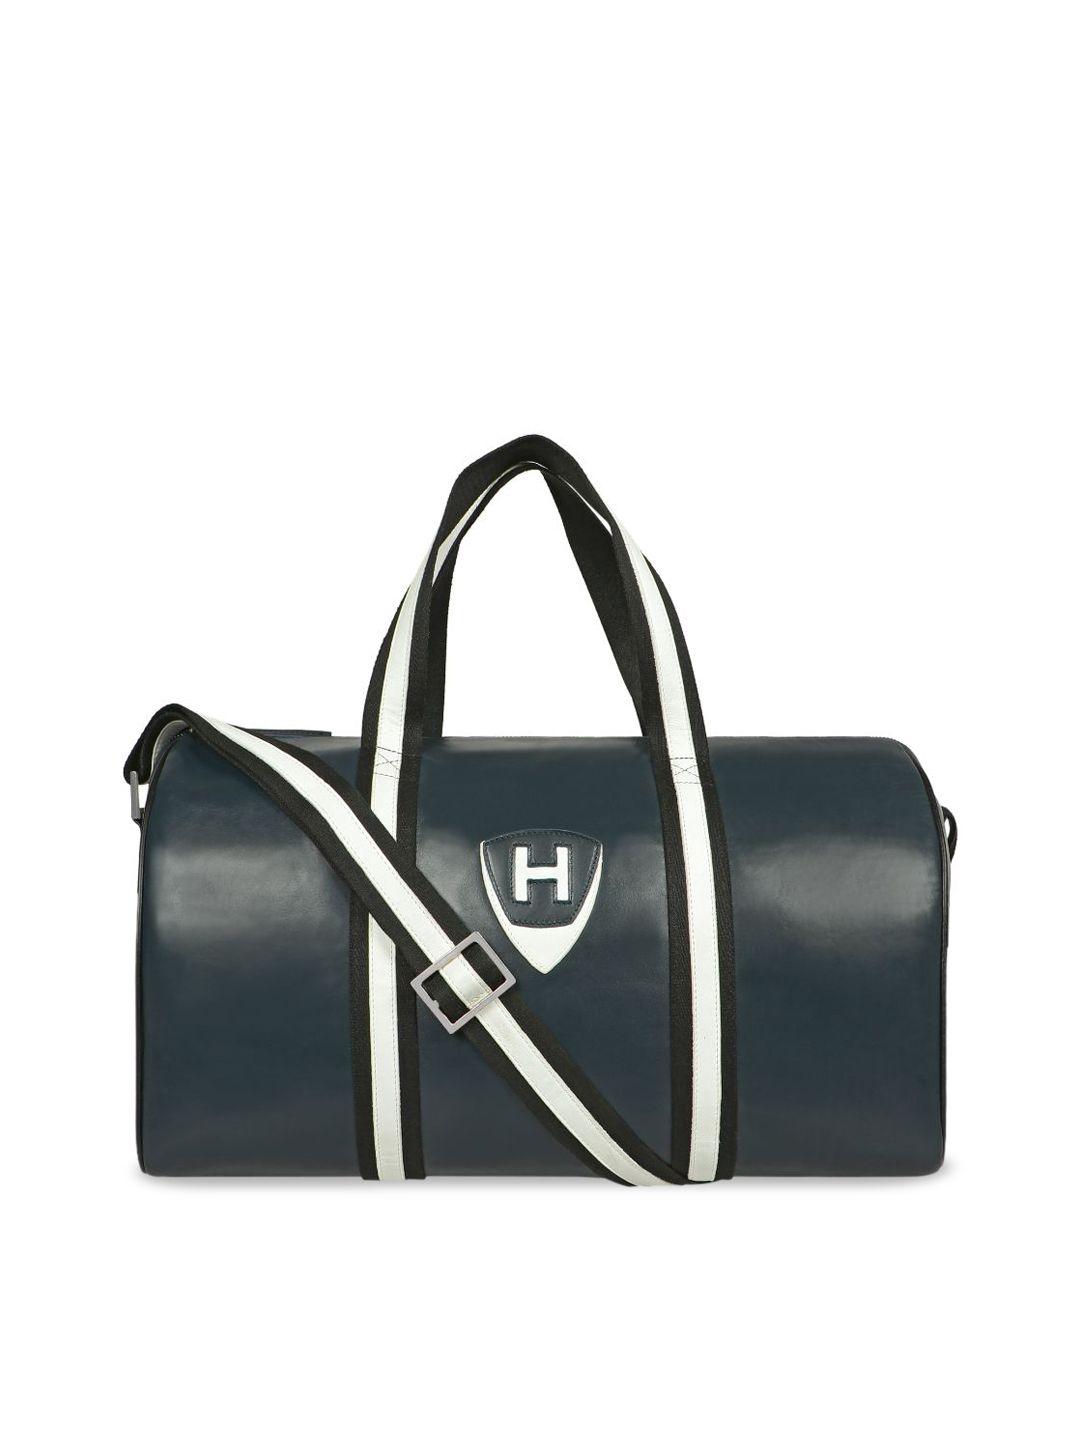 hidesign-leather-duffel-bag